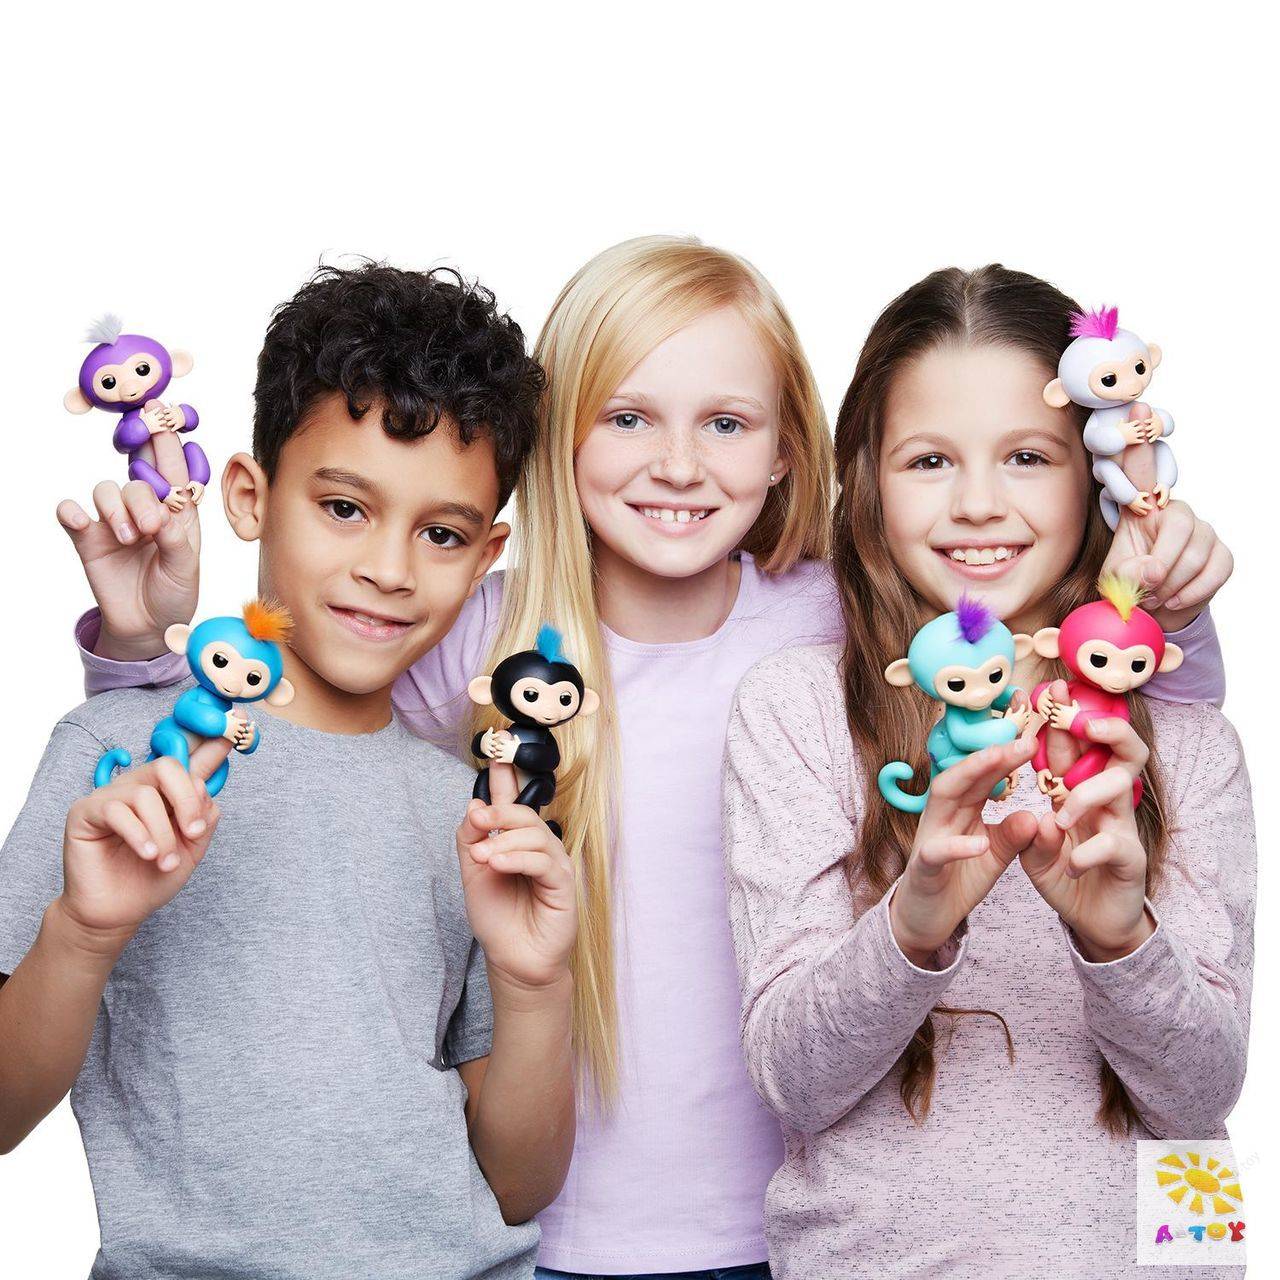 Какие самые популярные игрушки. Fingerlings, 3701a интерактивная обезьянка Финн (черная), 12см. Fingerlings, 3704a интерактивная обезьянка Миа (фиолетовая), 12см. Модные игрушки для детей.